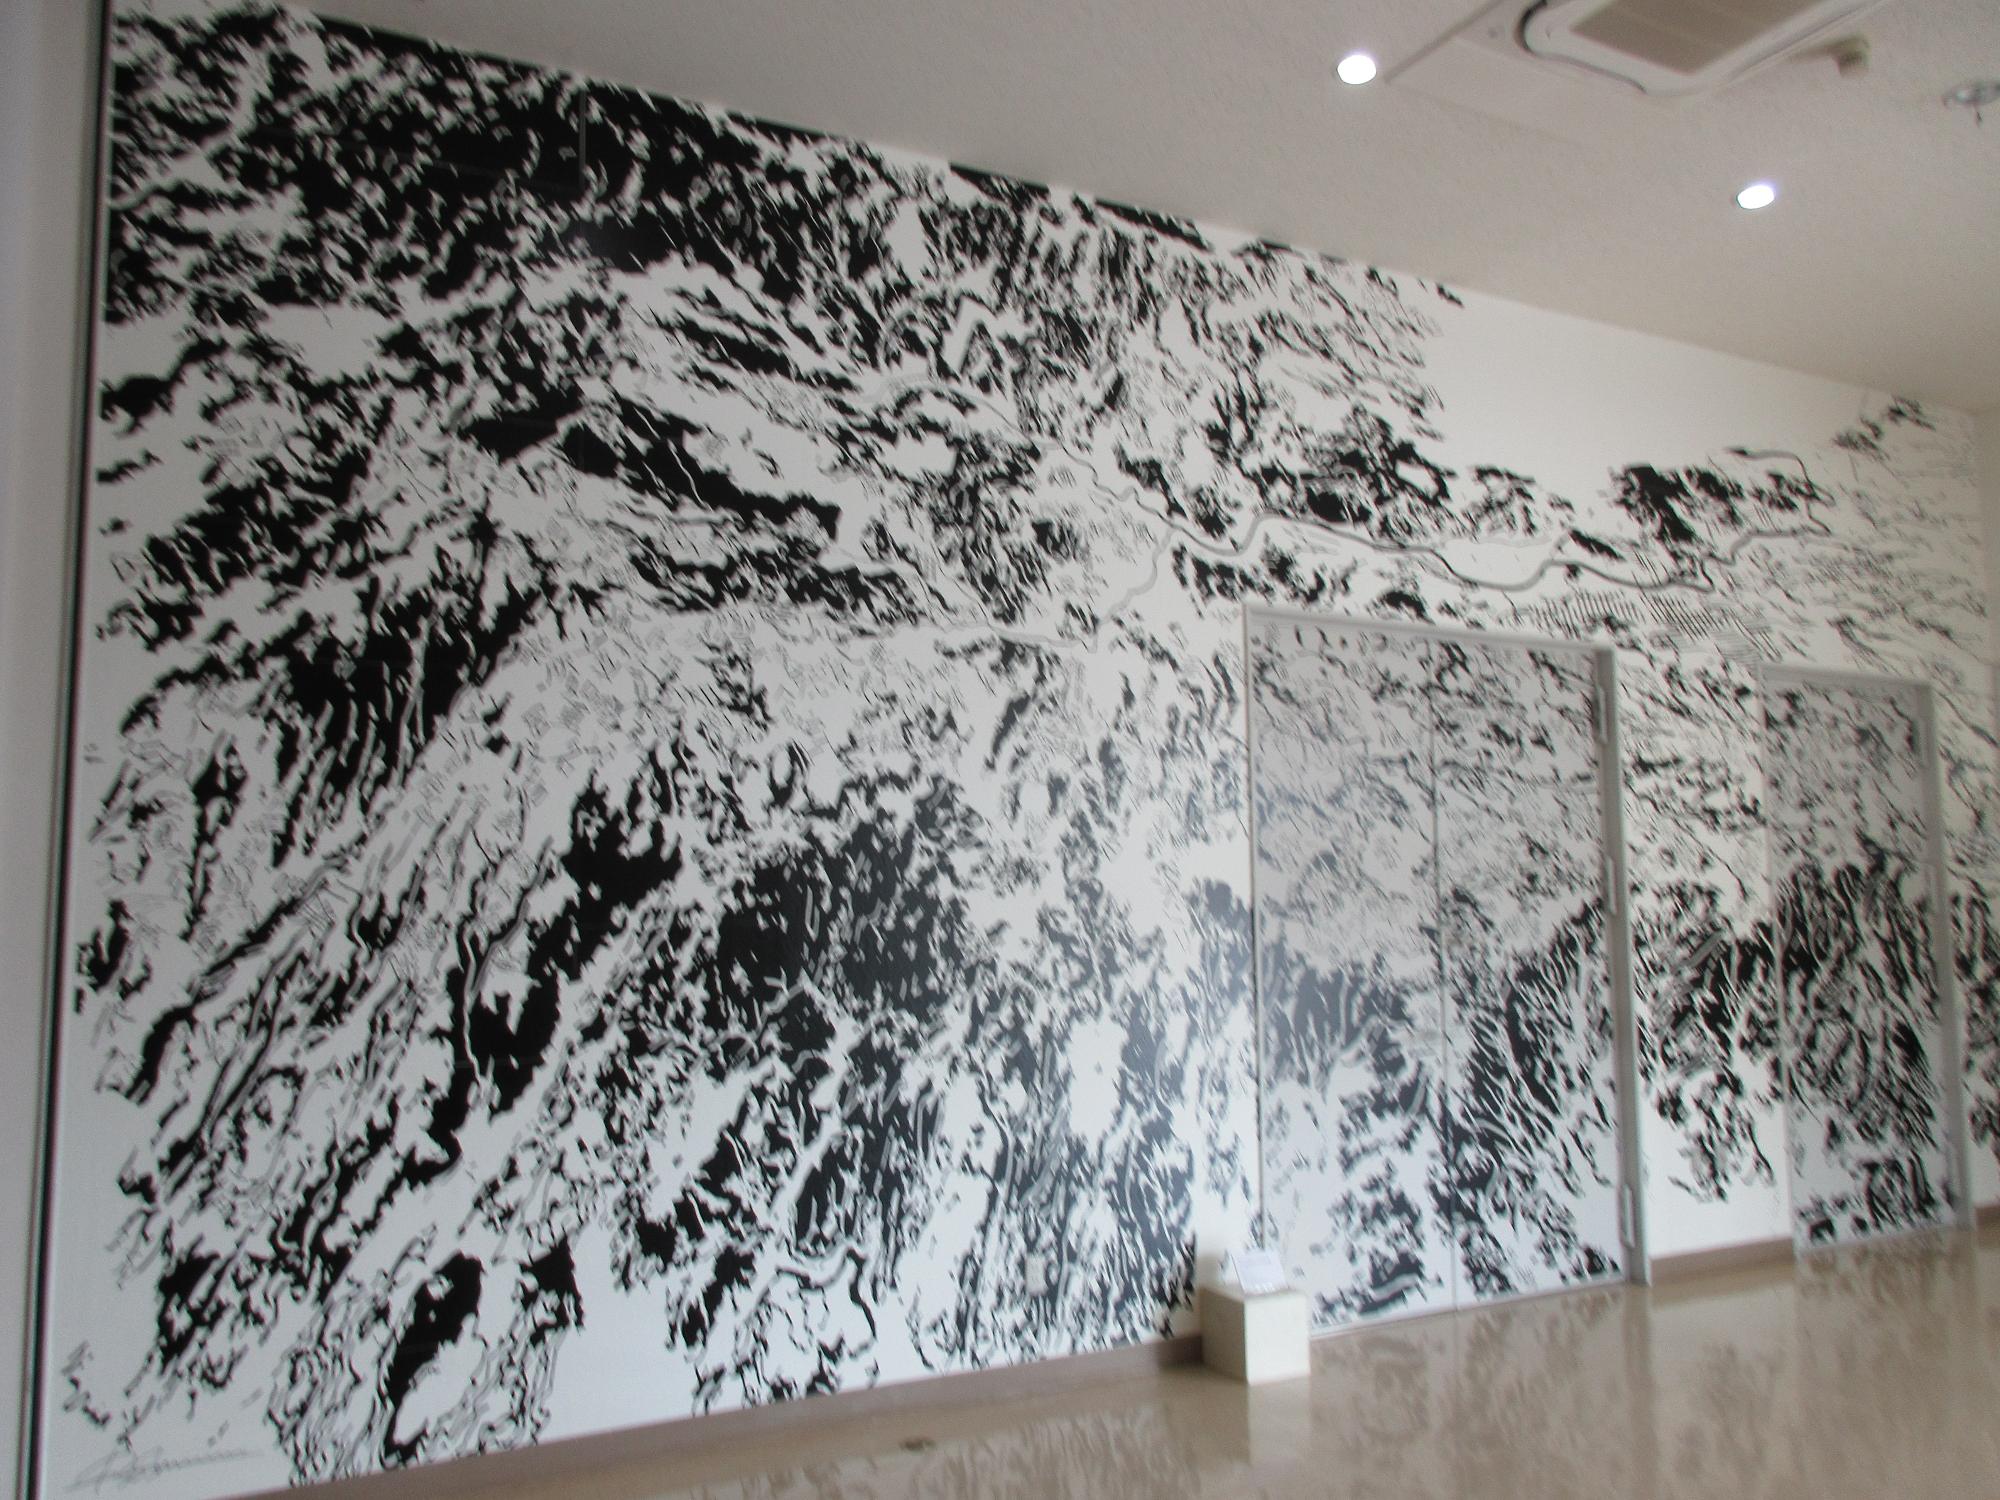 壁一面に白と黒で描かれた清水さんの作品「中伊豆俯瞰図―声字実相義（しょうじじっそうぎ）―」の写真